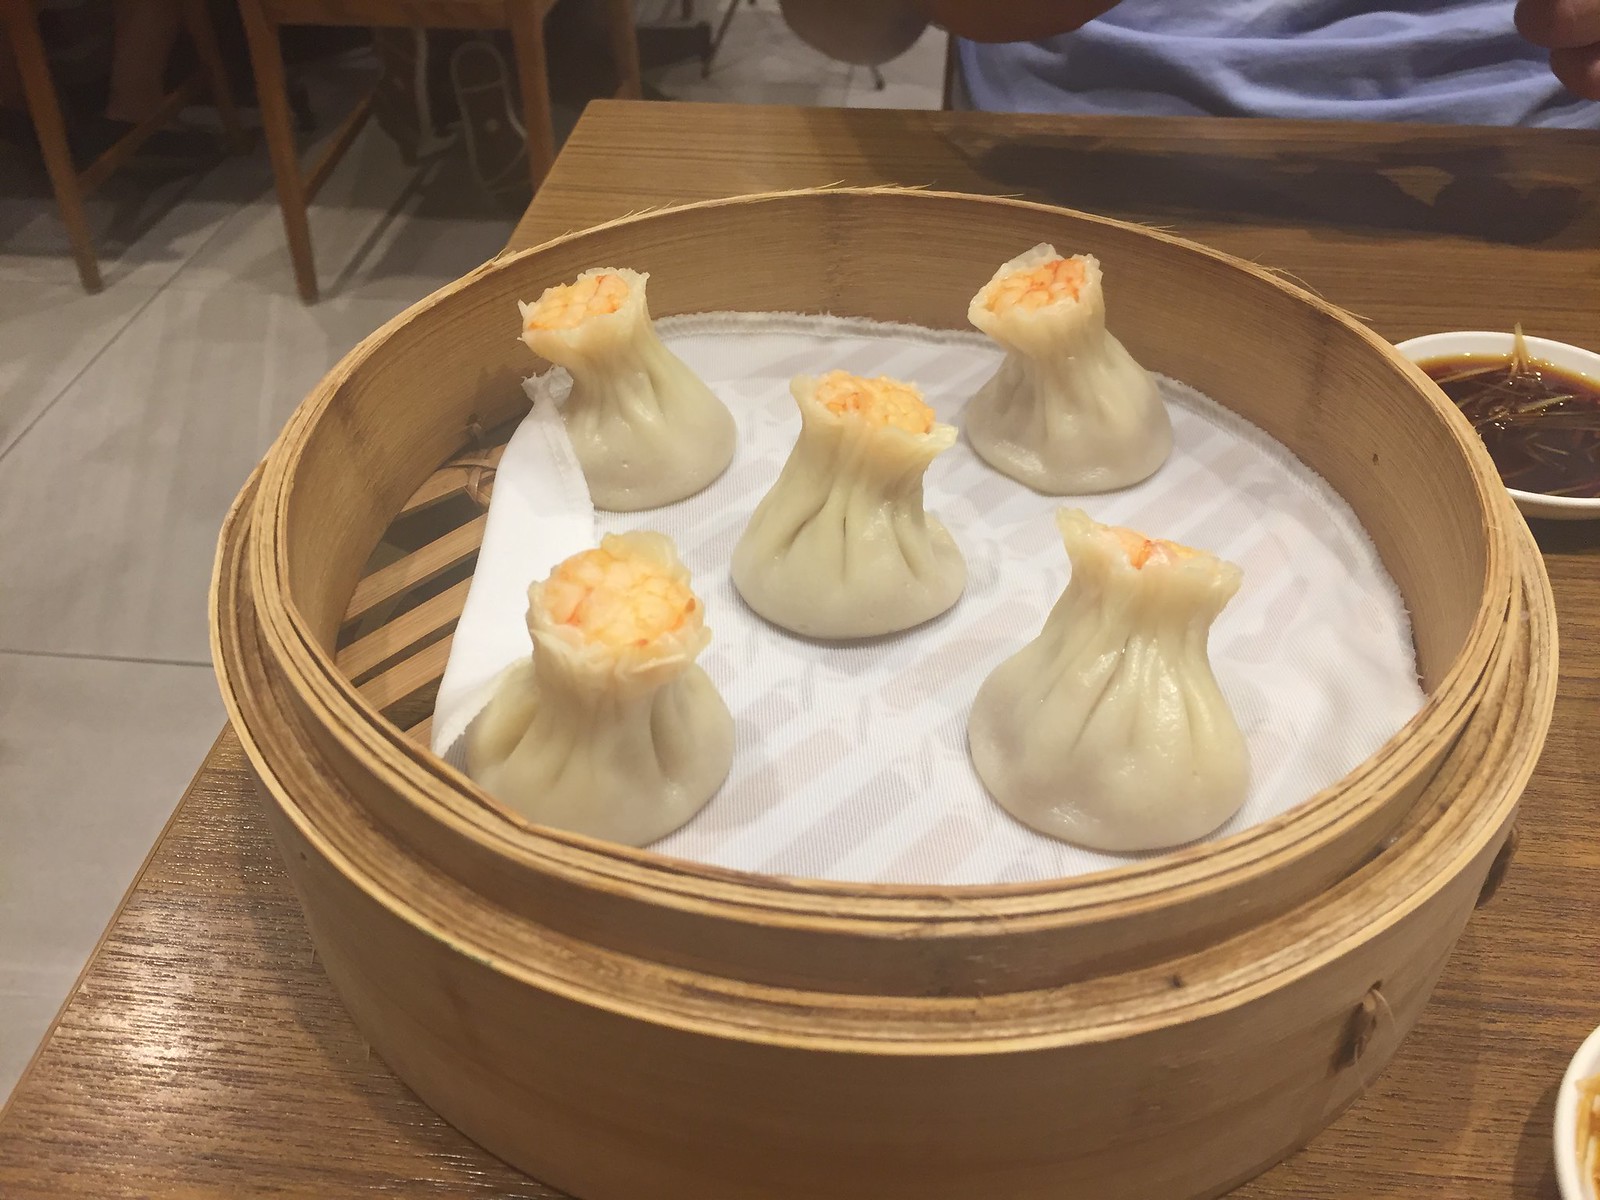 Dumplings at Din Tai Fung